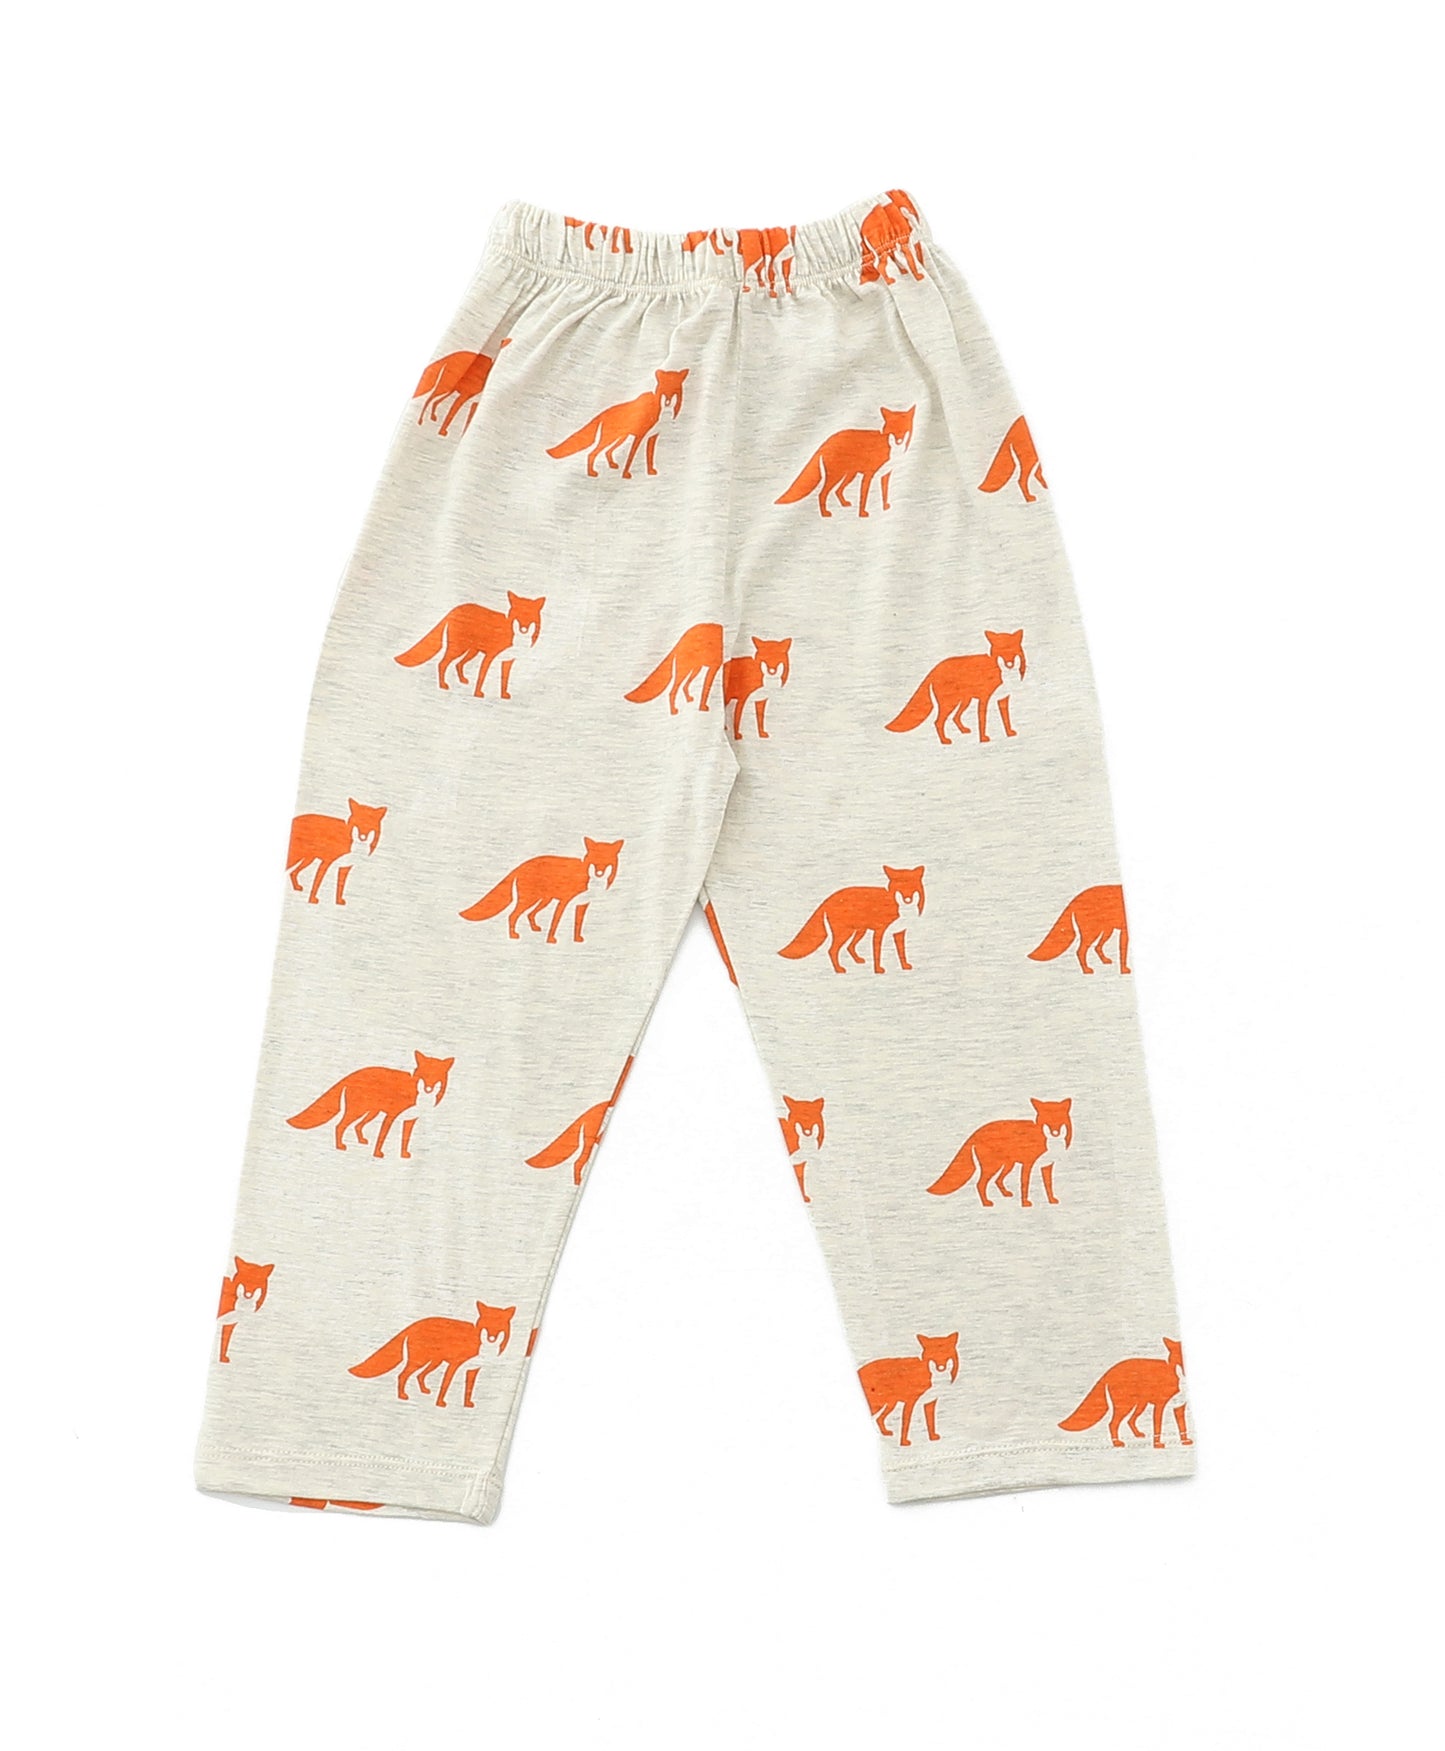 Dinosaur Printed Kids Pyjamas